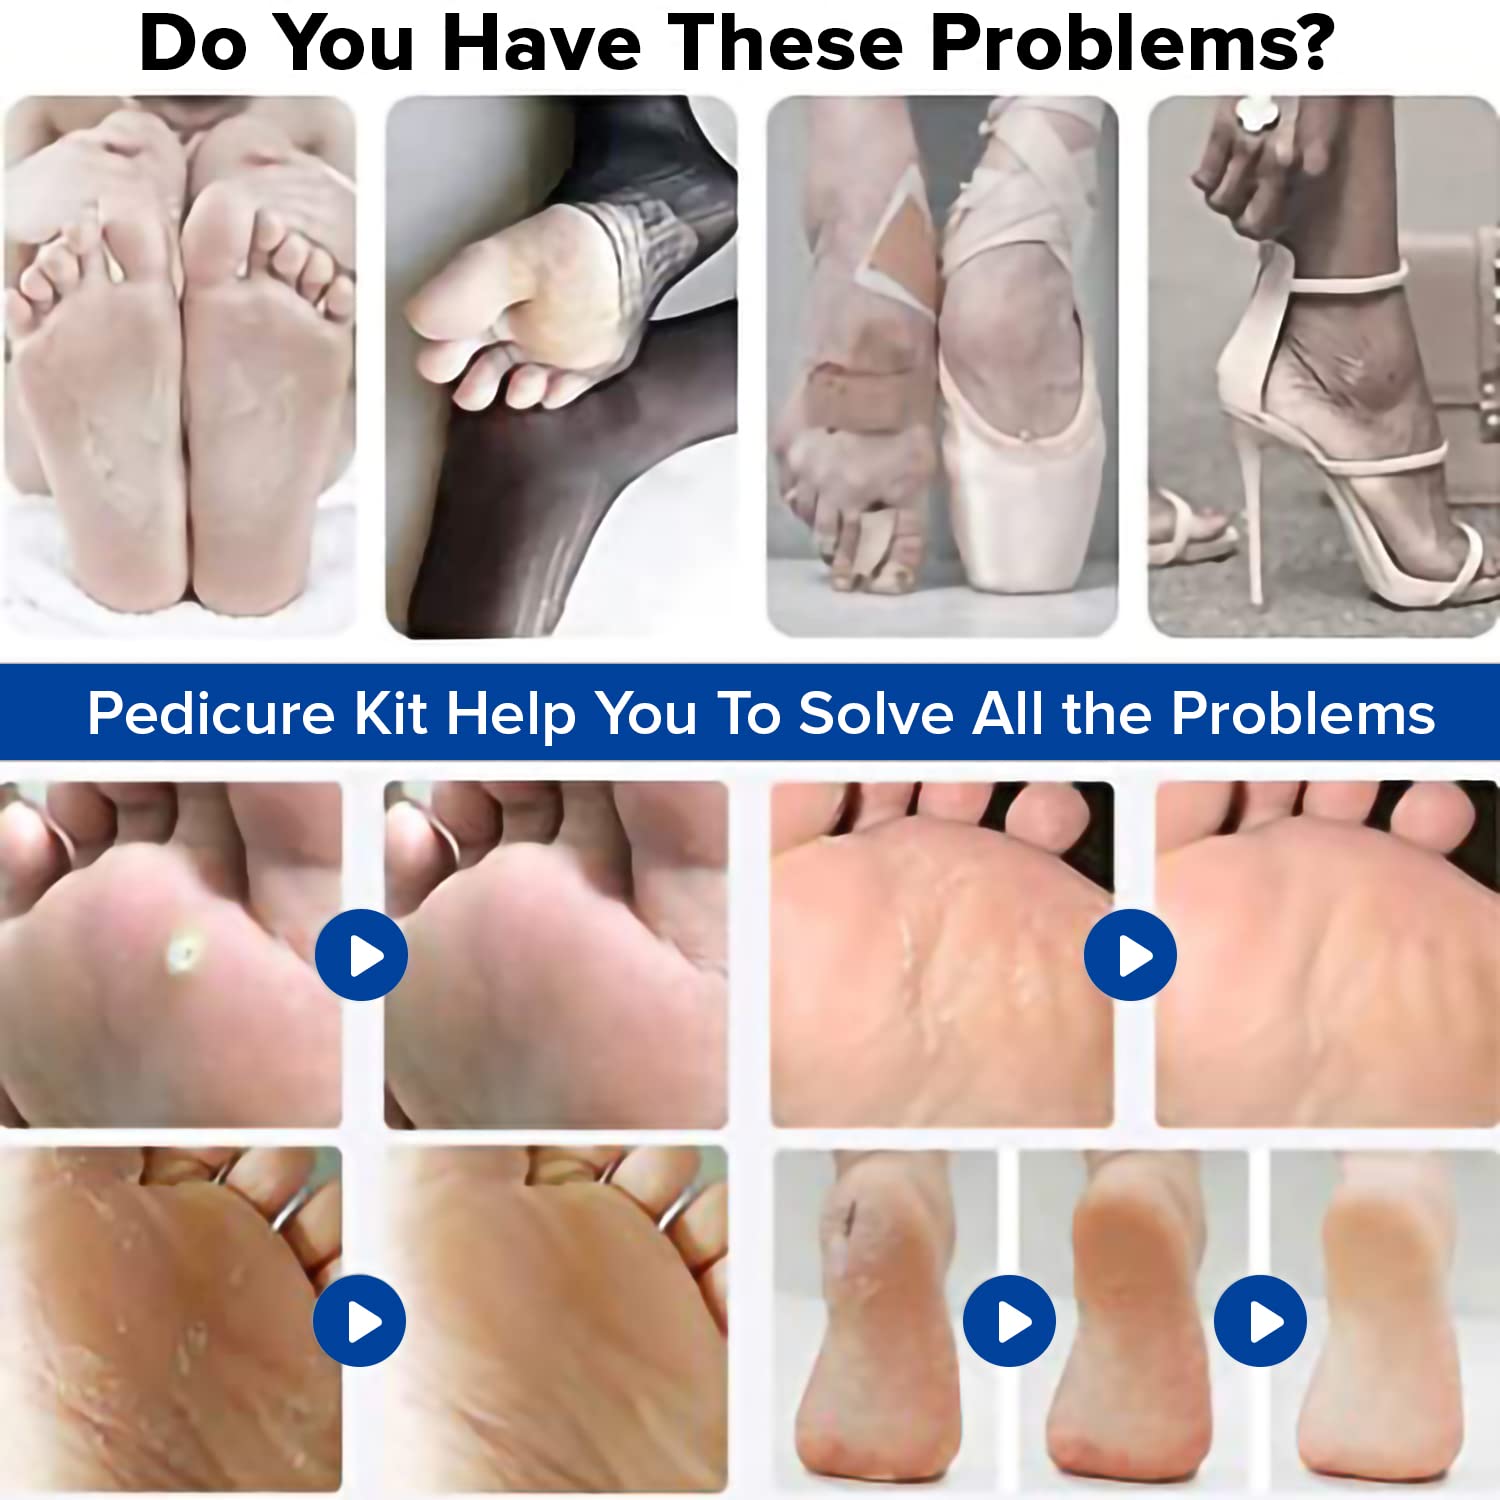 Dr Foot Pedicure Tools for Feet - 8 in 1 Pedicure Kit | Foot Scrubber for Dead Skin, Callus Remover, Foot Scraper, Foot File, Pitchfork, Filer for Nail Repair - 1 Set (Pack of 2)